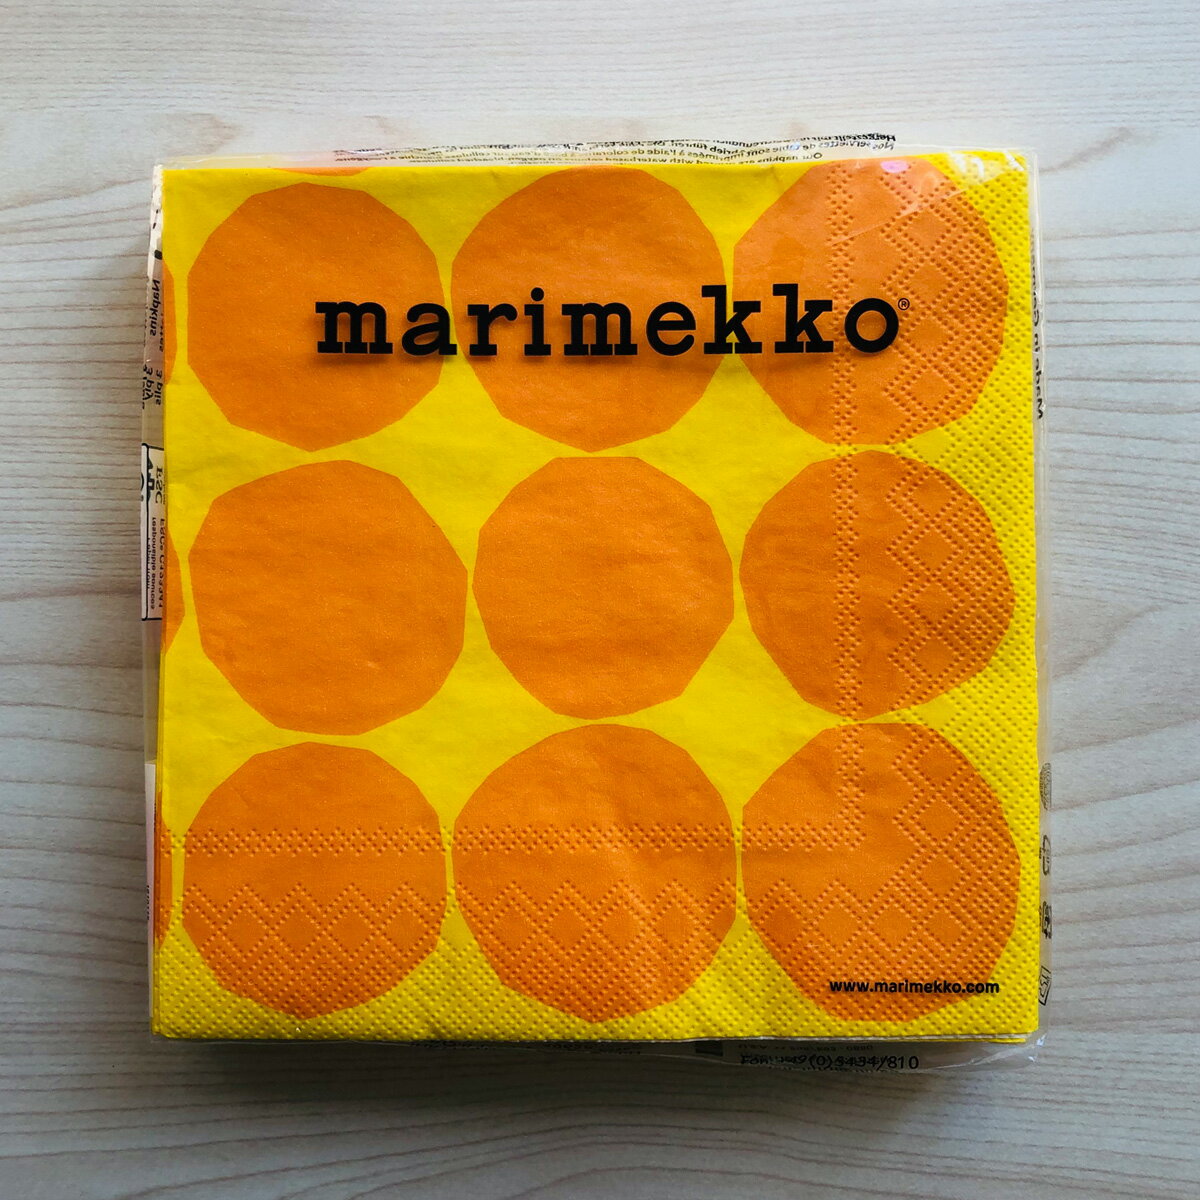 マリメッコ marimekko ペーパーナプキン 紙ナプキン ランチサイズ 20枚 606470 KIVET キヴェット yellow ドット イエロー+オレンジ